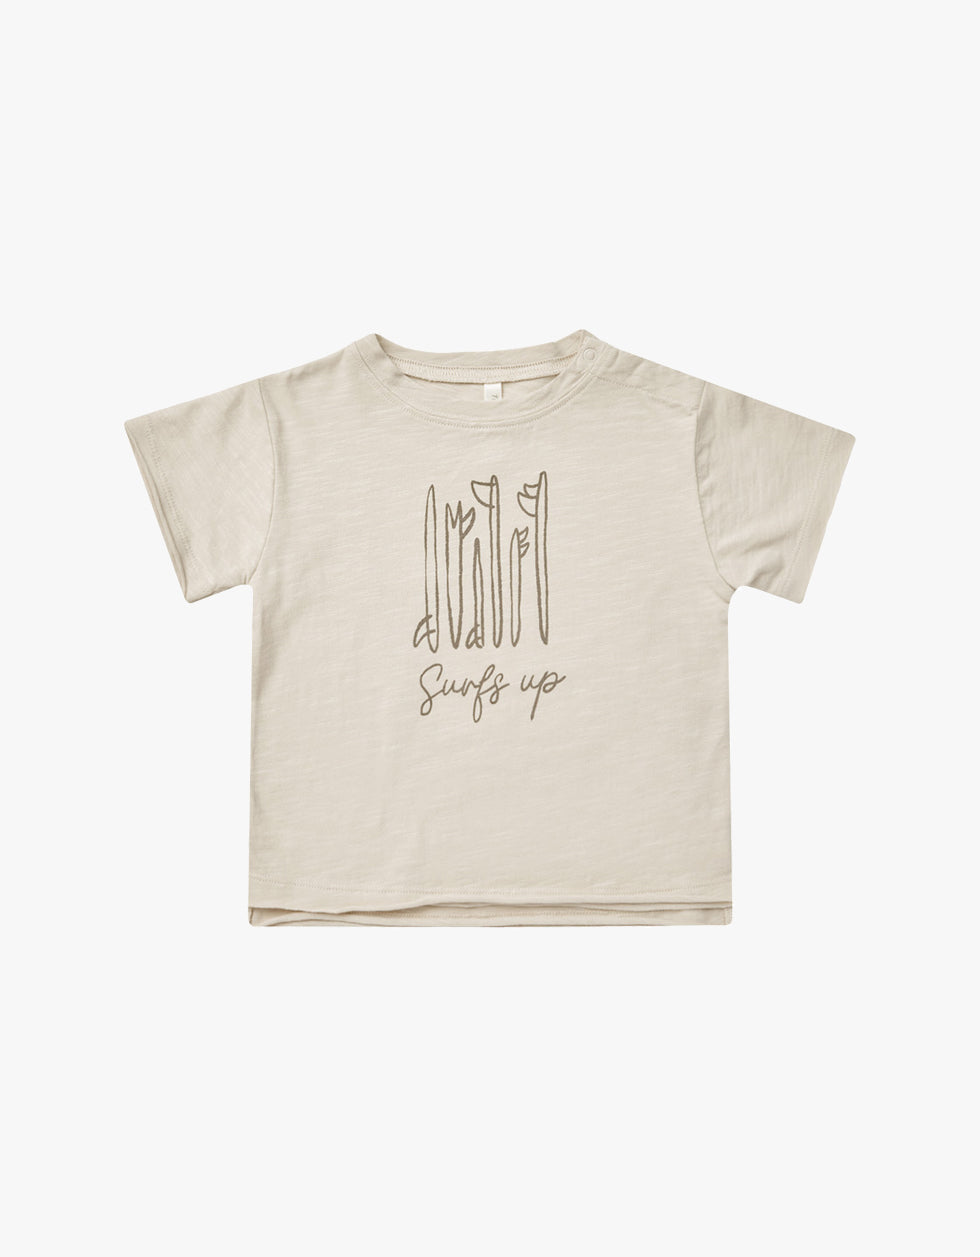 T-shirt | Surf's up